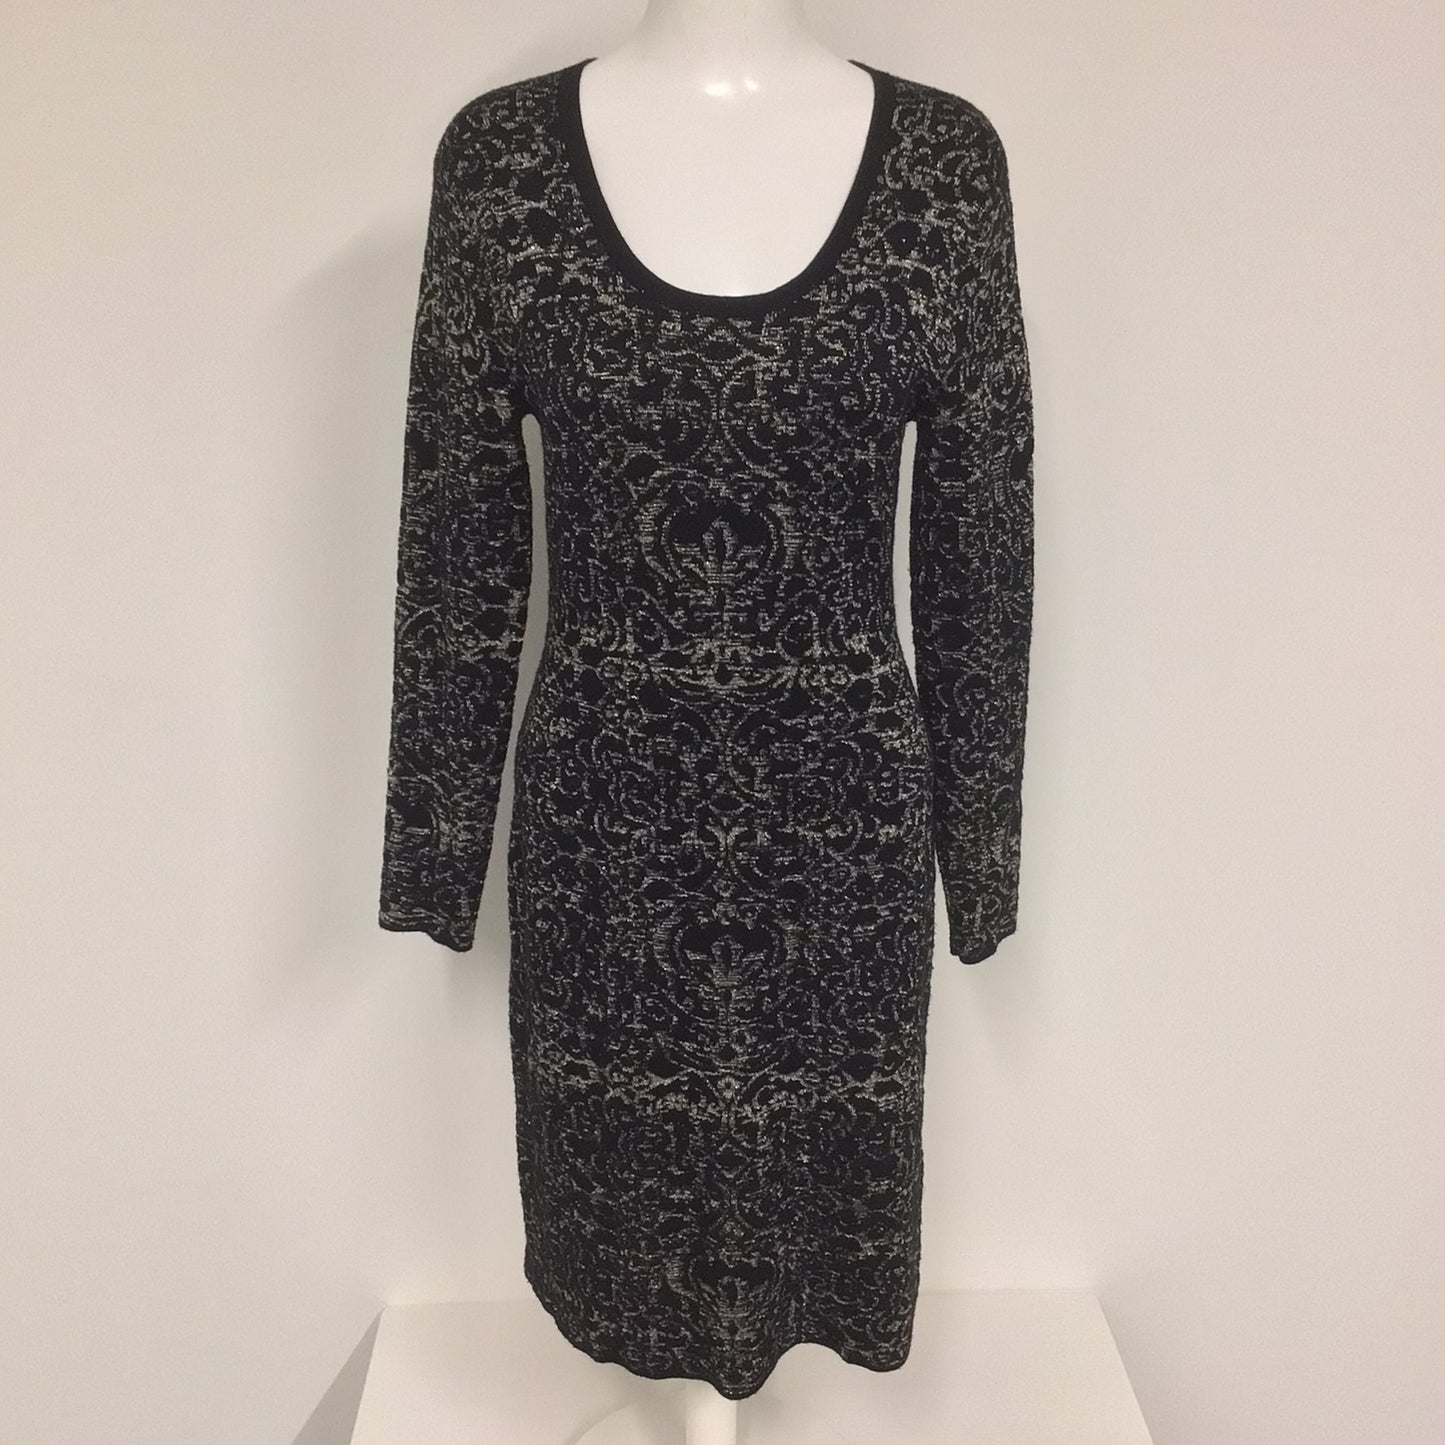 LK Bennett Dr Torino Black & Grey Metallic Thread Knitted Wool Blend Dress Size 10